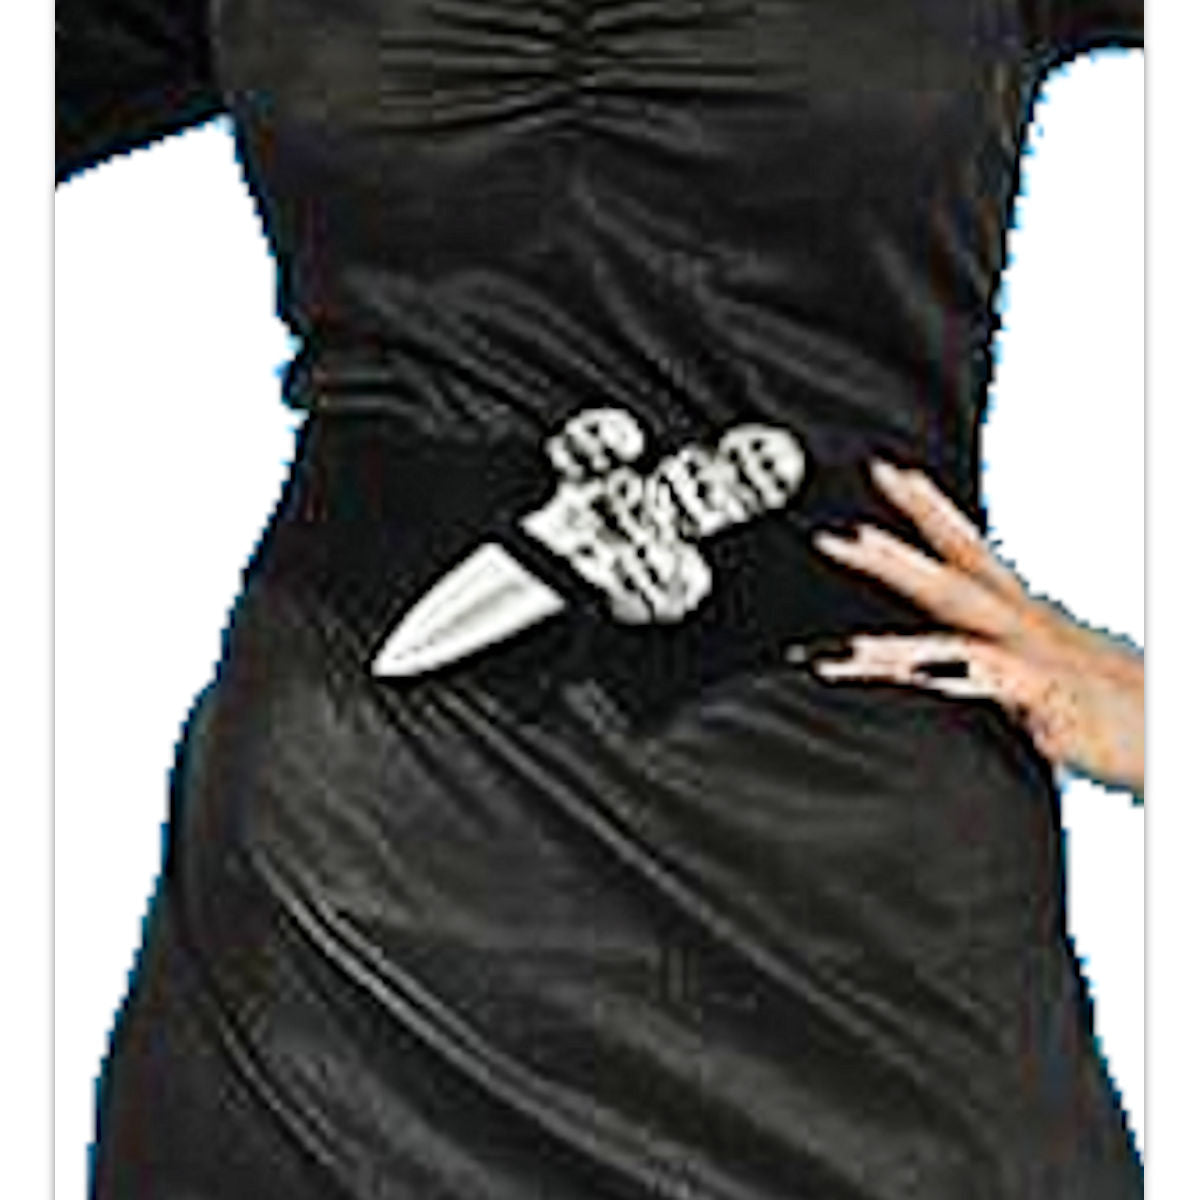 Elvira Daughter of Darkness Sorceress Women's Halloween Costume